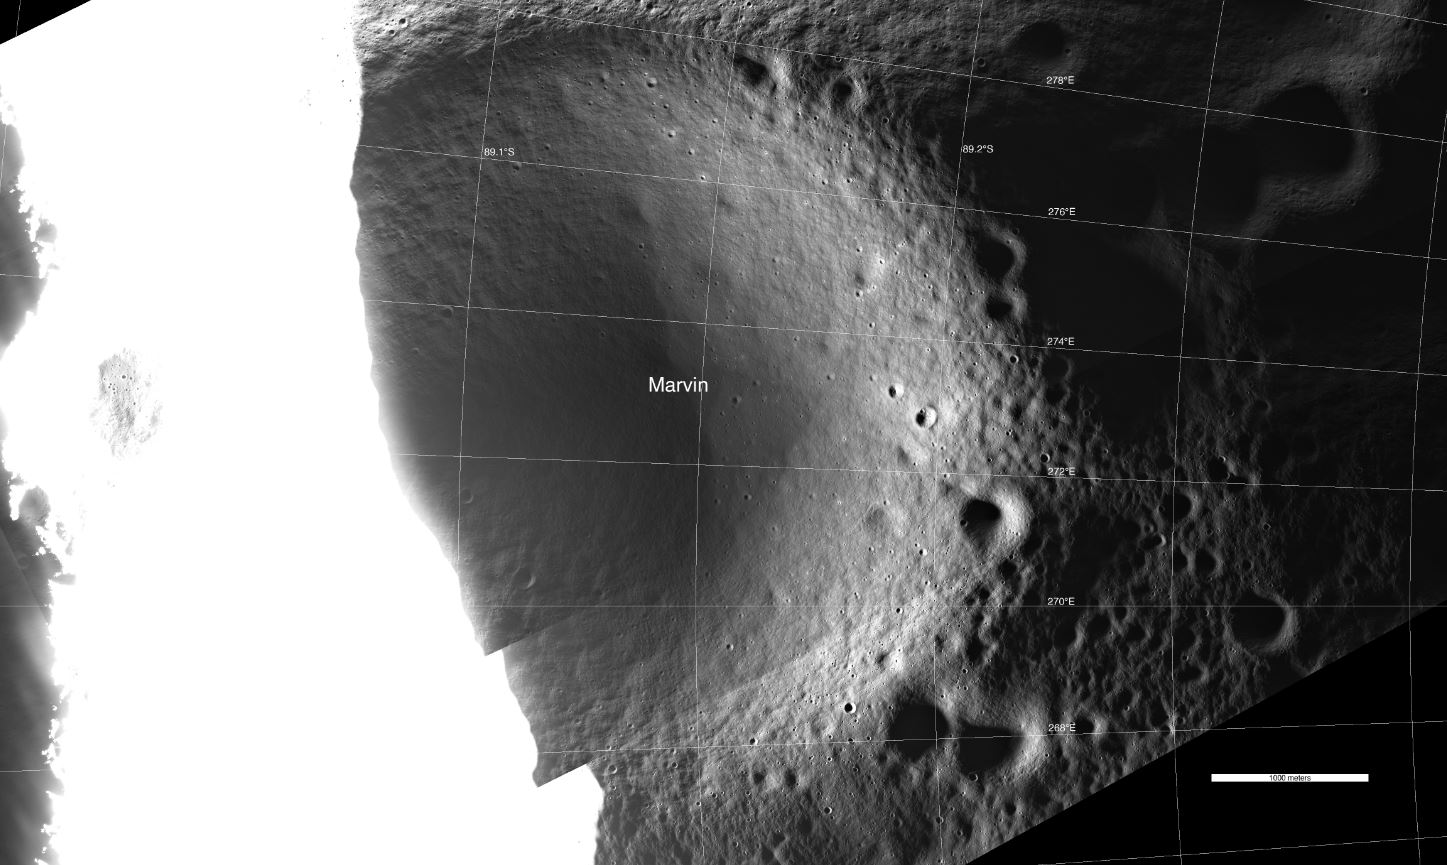 Ο Marvin Crater φωτογραφήθηκε χρησιμοποιώντας ανακλώμενο φως σε σύγκριση με το περιβάλλον που πλημμύρισε από το άμεσο ηλιακό φως.